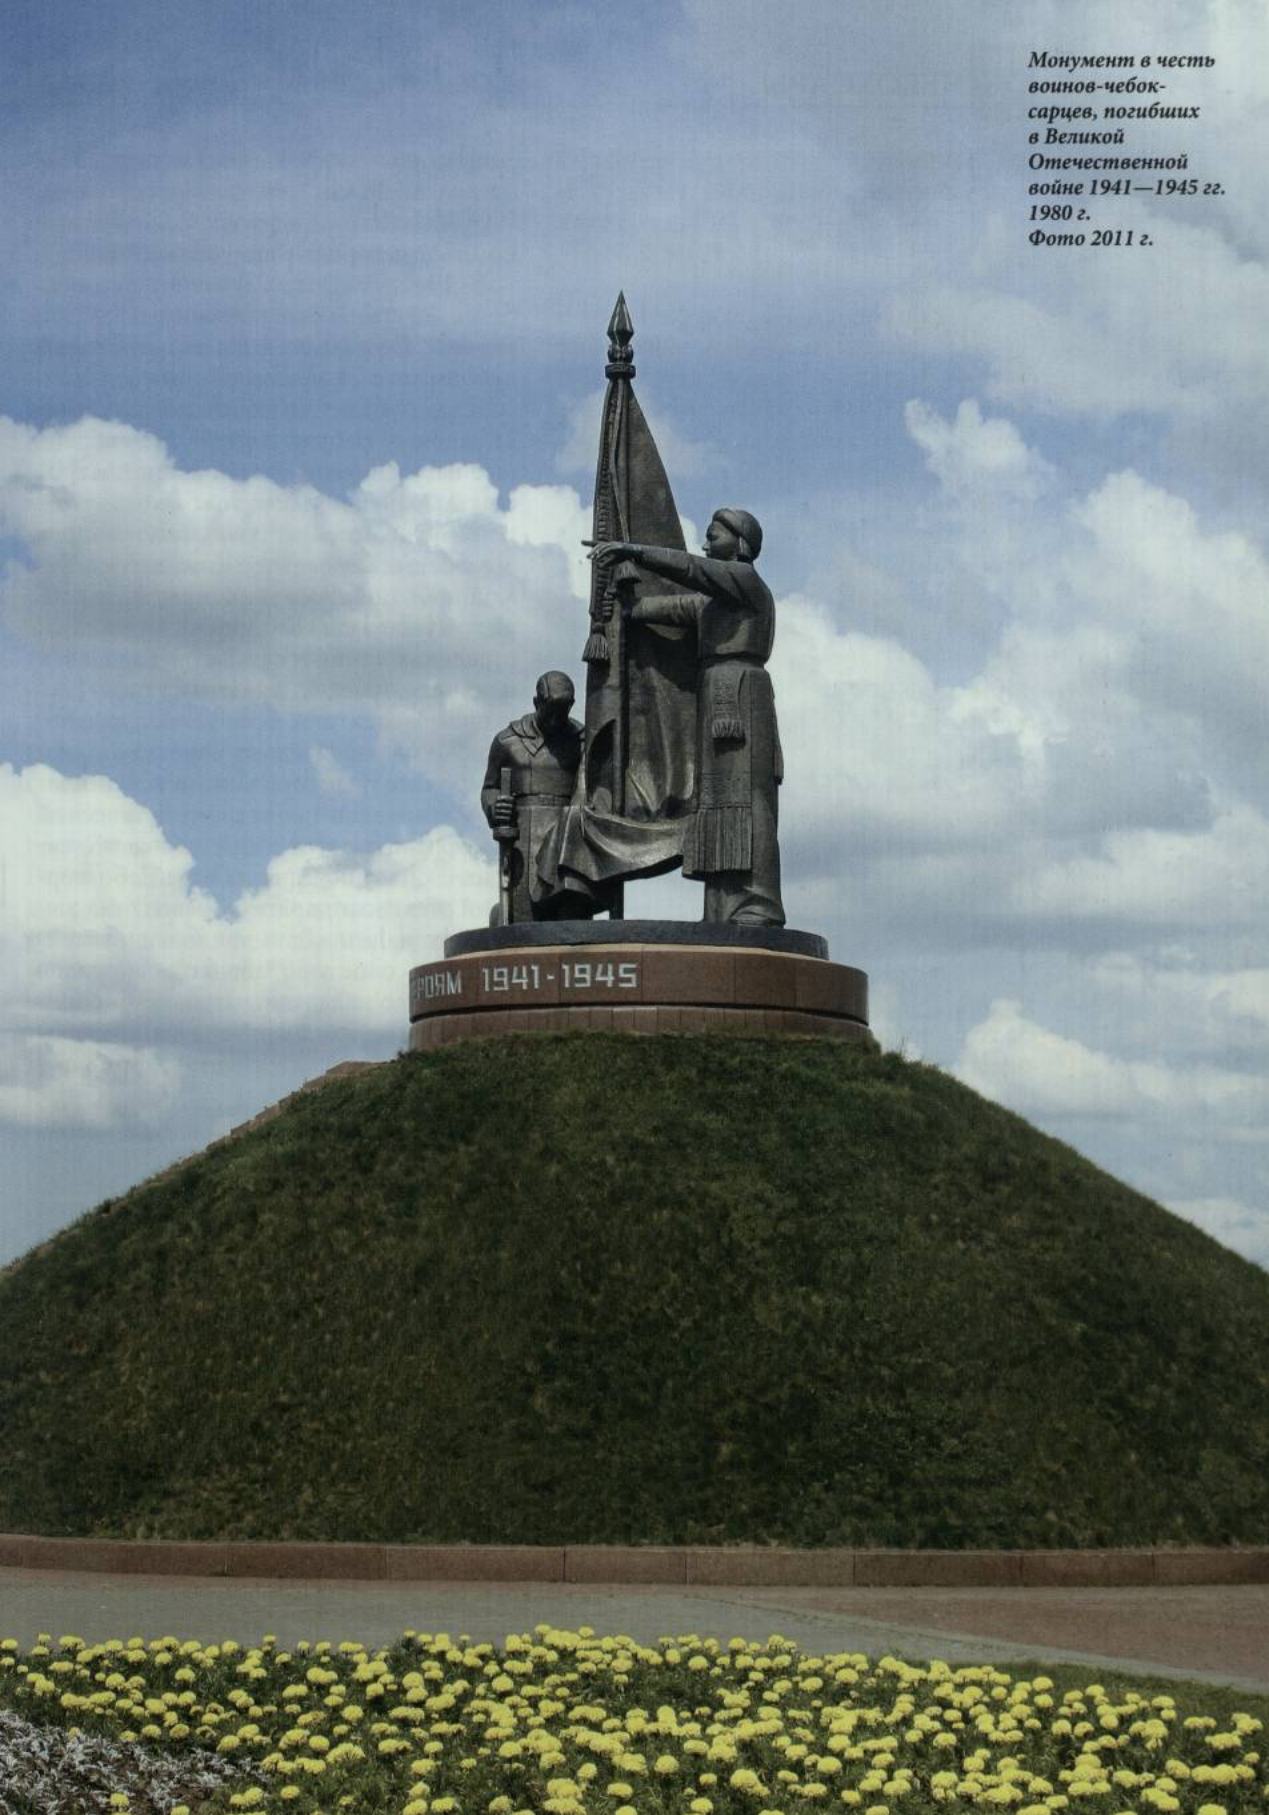 Монумент в честь воинов-чебоксарцев, погибших в Великой Отечественной войне 1941—1945 гг. 1980 г.